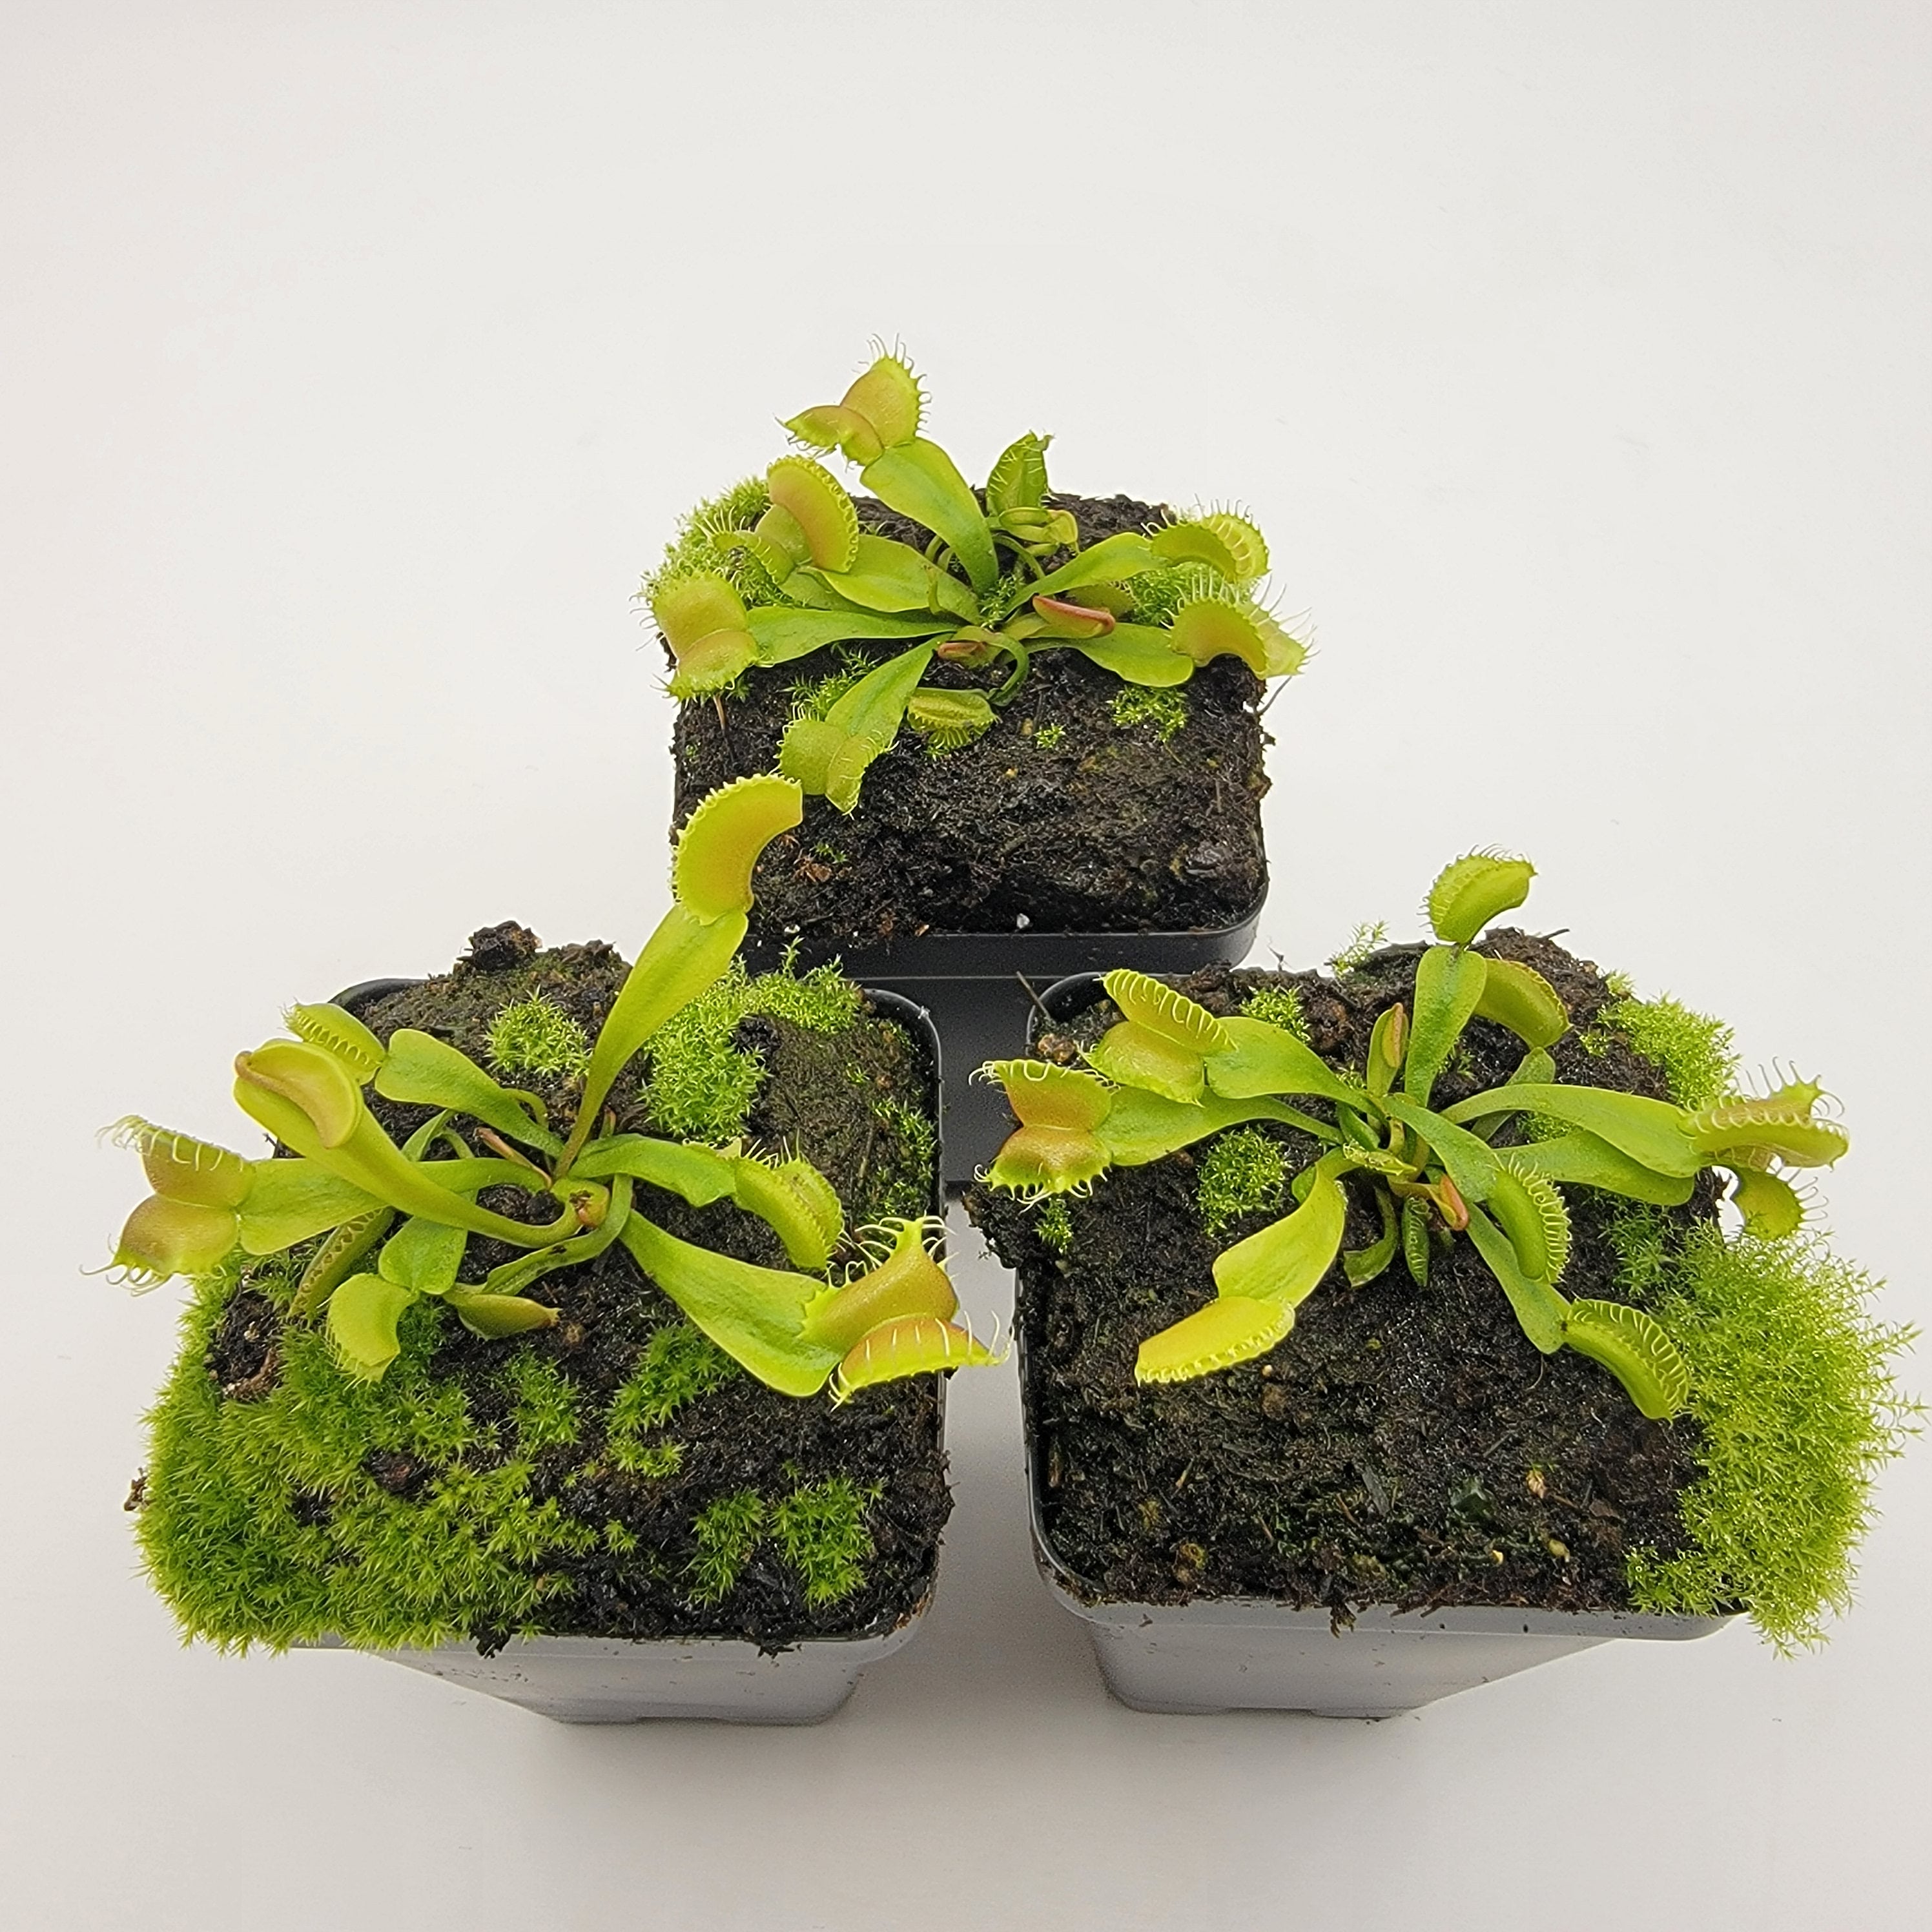 Venus flytrap (Dionaea muscipula) GJ Umgekrempelt - Rainbow Carnivorous Plants LLC